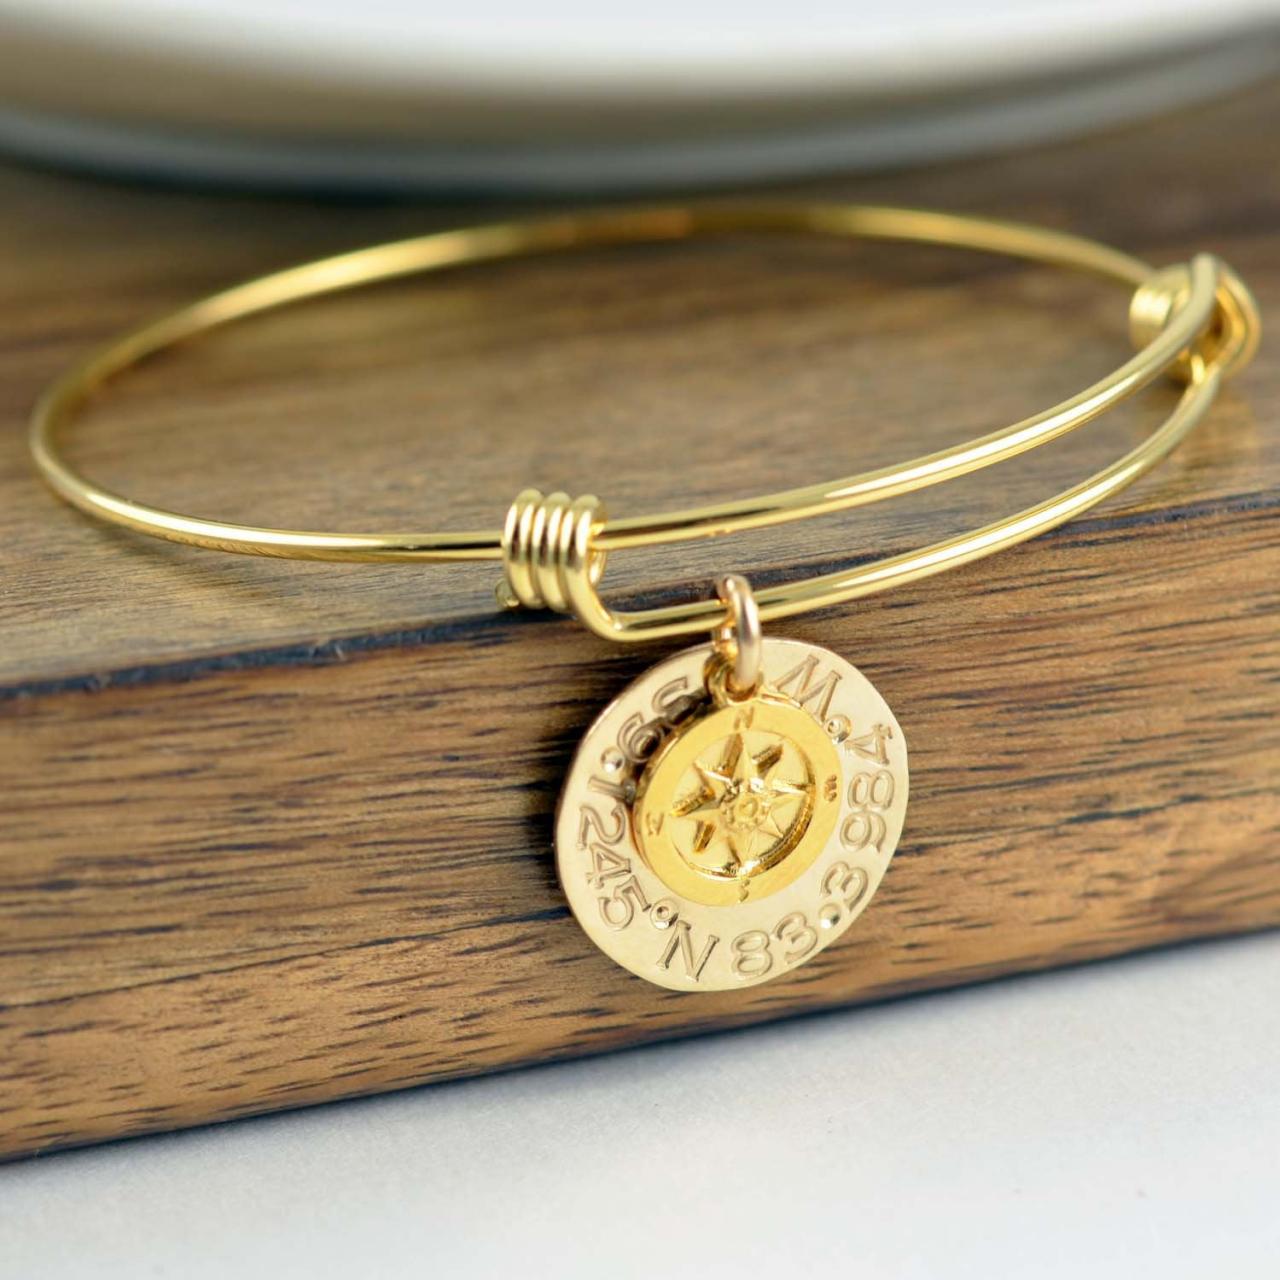 Rose Gold Coordinate Bracelet, Latitude Longitude Bracelet, Custom Coordinates, Coordinate Jewelry, Hand Stamped Bracelet, Coordinates Gift